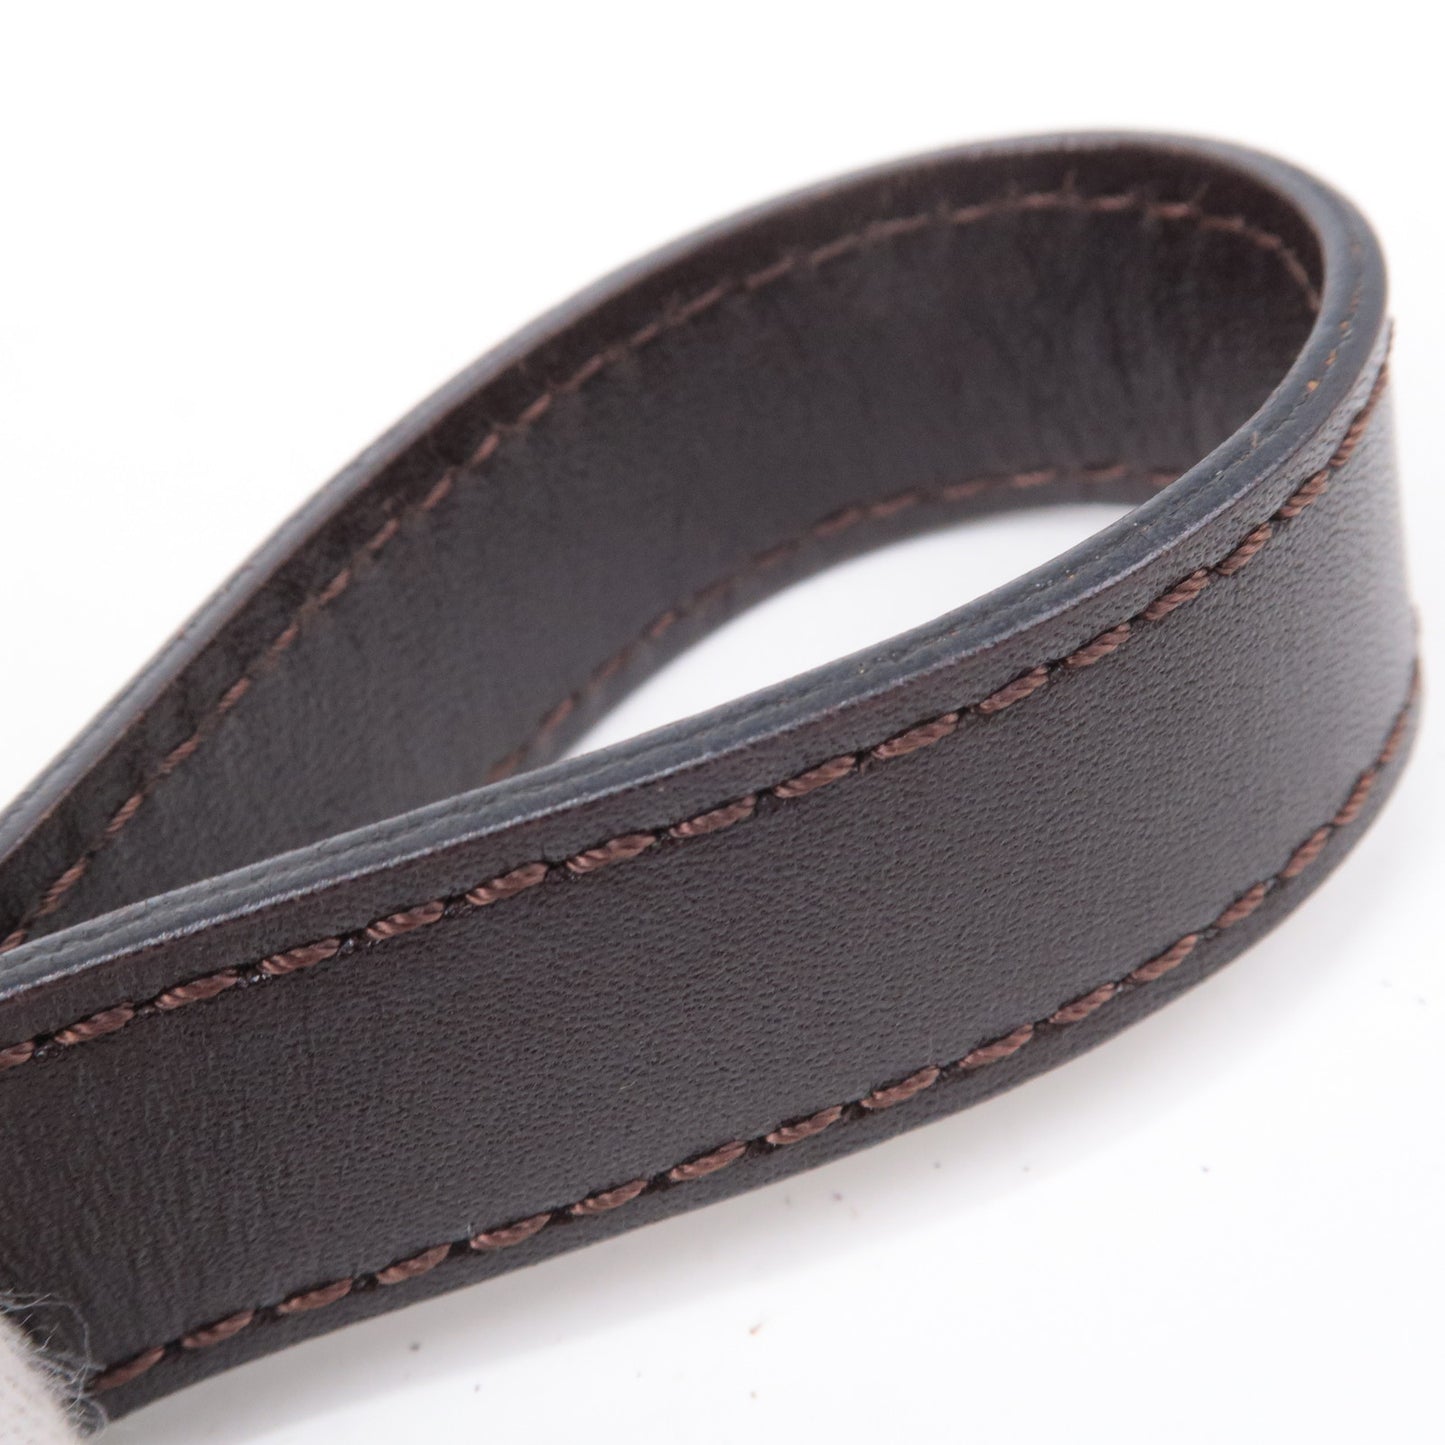 FENDI Zucca Canvas Leather Shoulder Bag Brown Black 26462